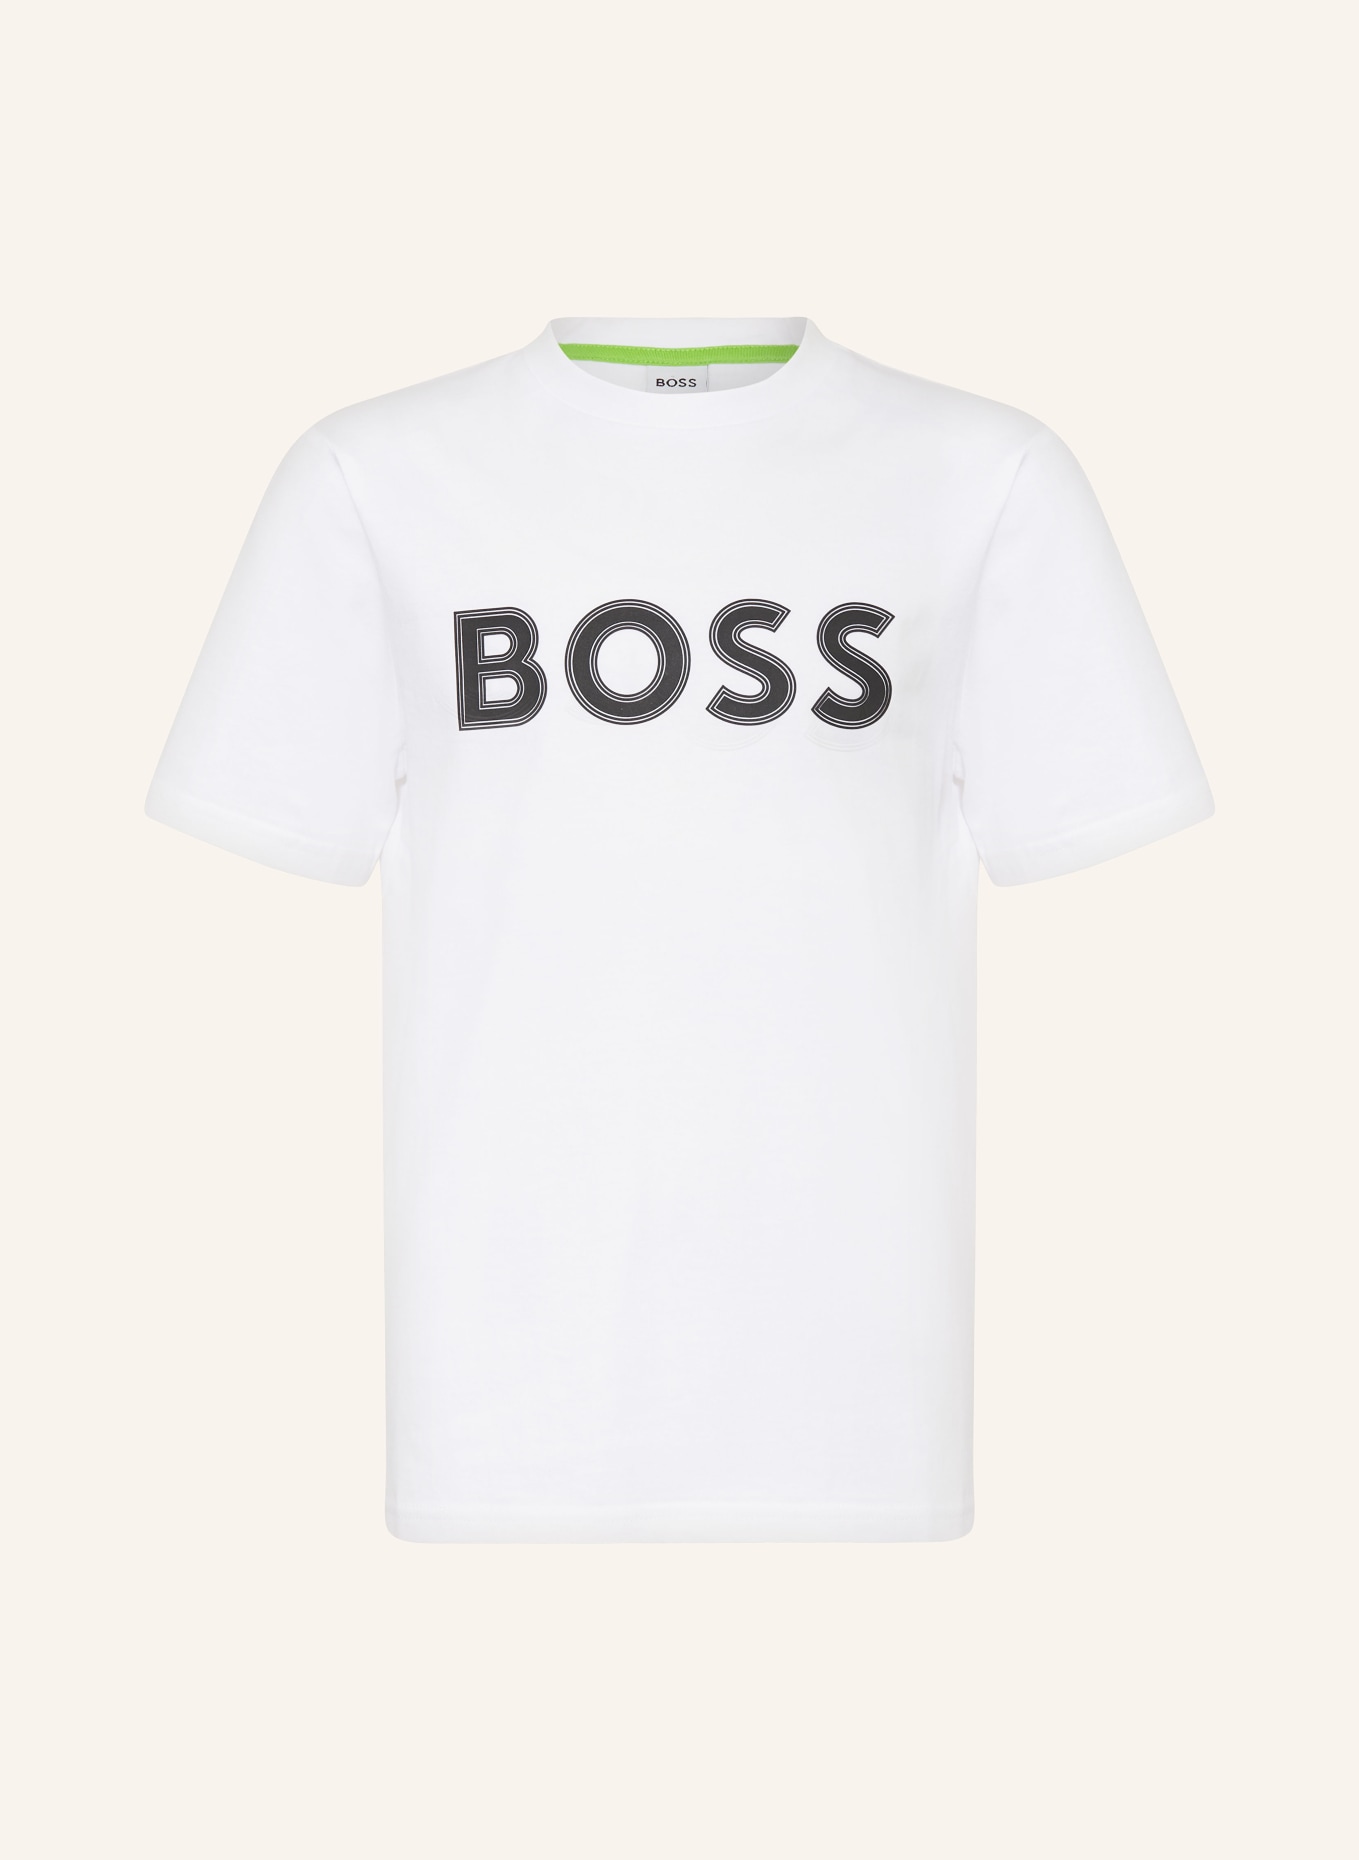 BOSS T-Shirt LOGO, Farbe: WEISS (Bild 1)